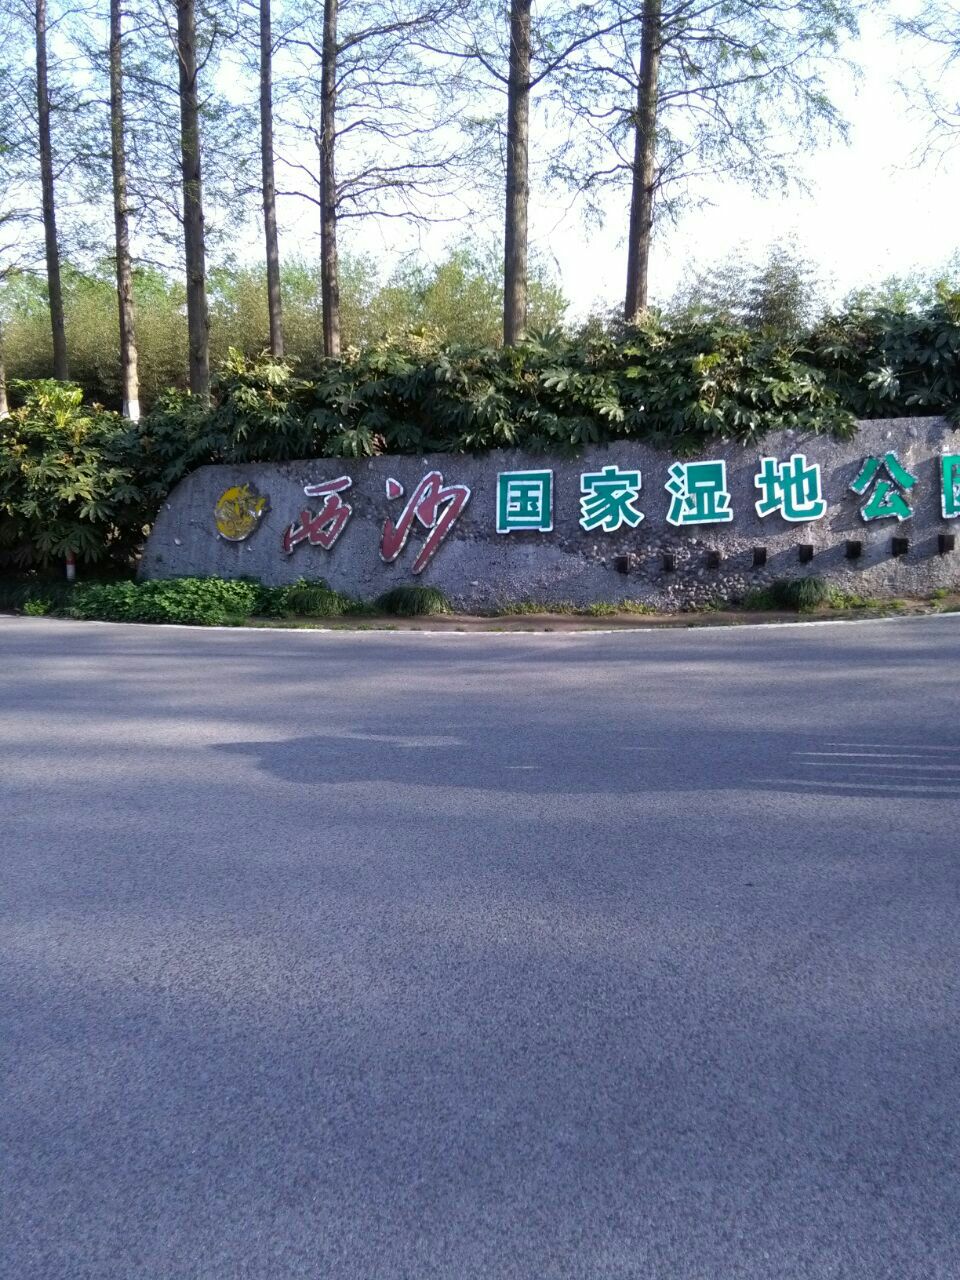 【携程攻略】上海崇明西沙湿地公园好玩吗,崇明西沙怎